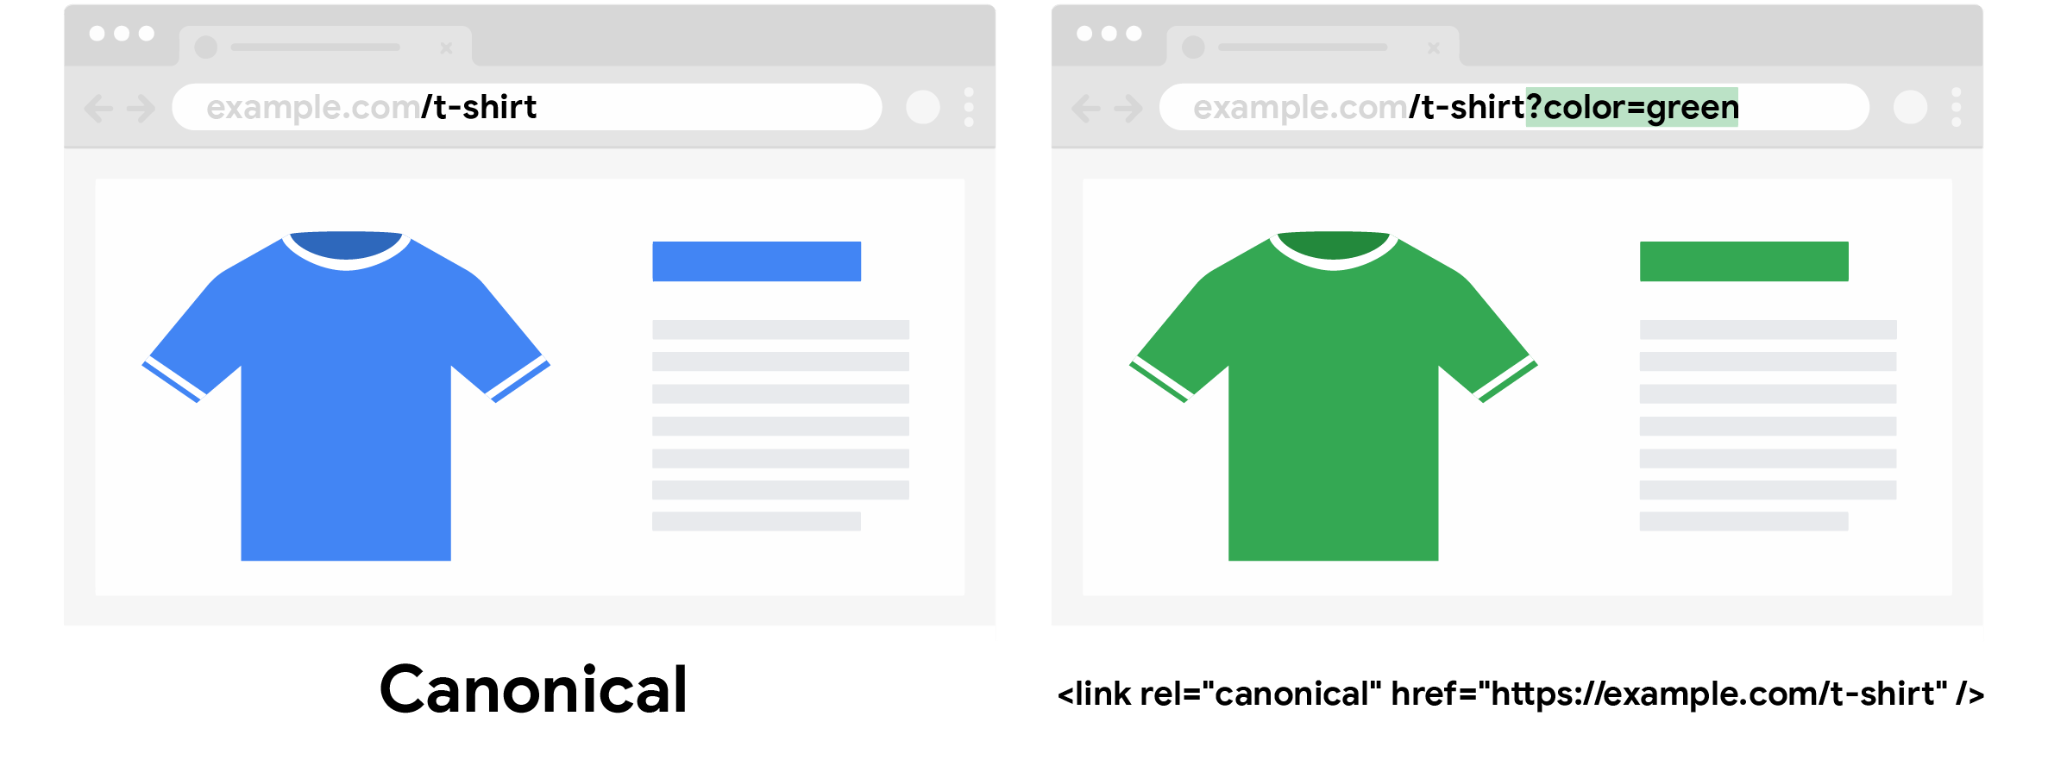 Канонический URL для футболки синего цвета, в котором не указан параметр запроса цвета, и обычный URL для футболки зеленого цвета, содержащий такой параметр